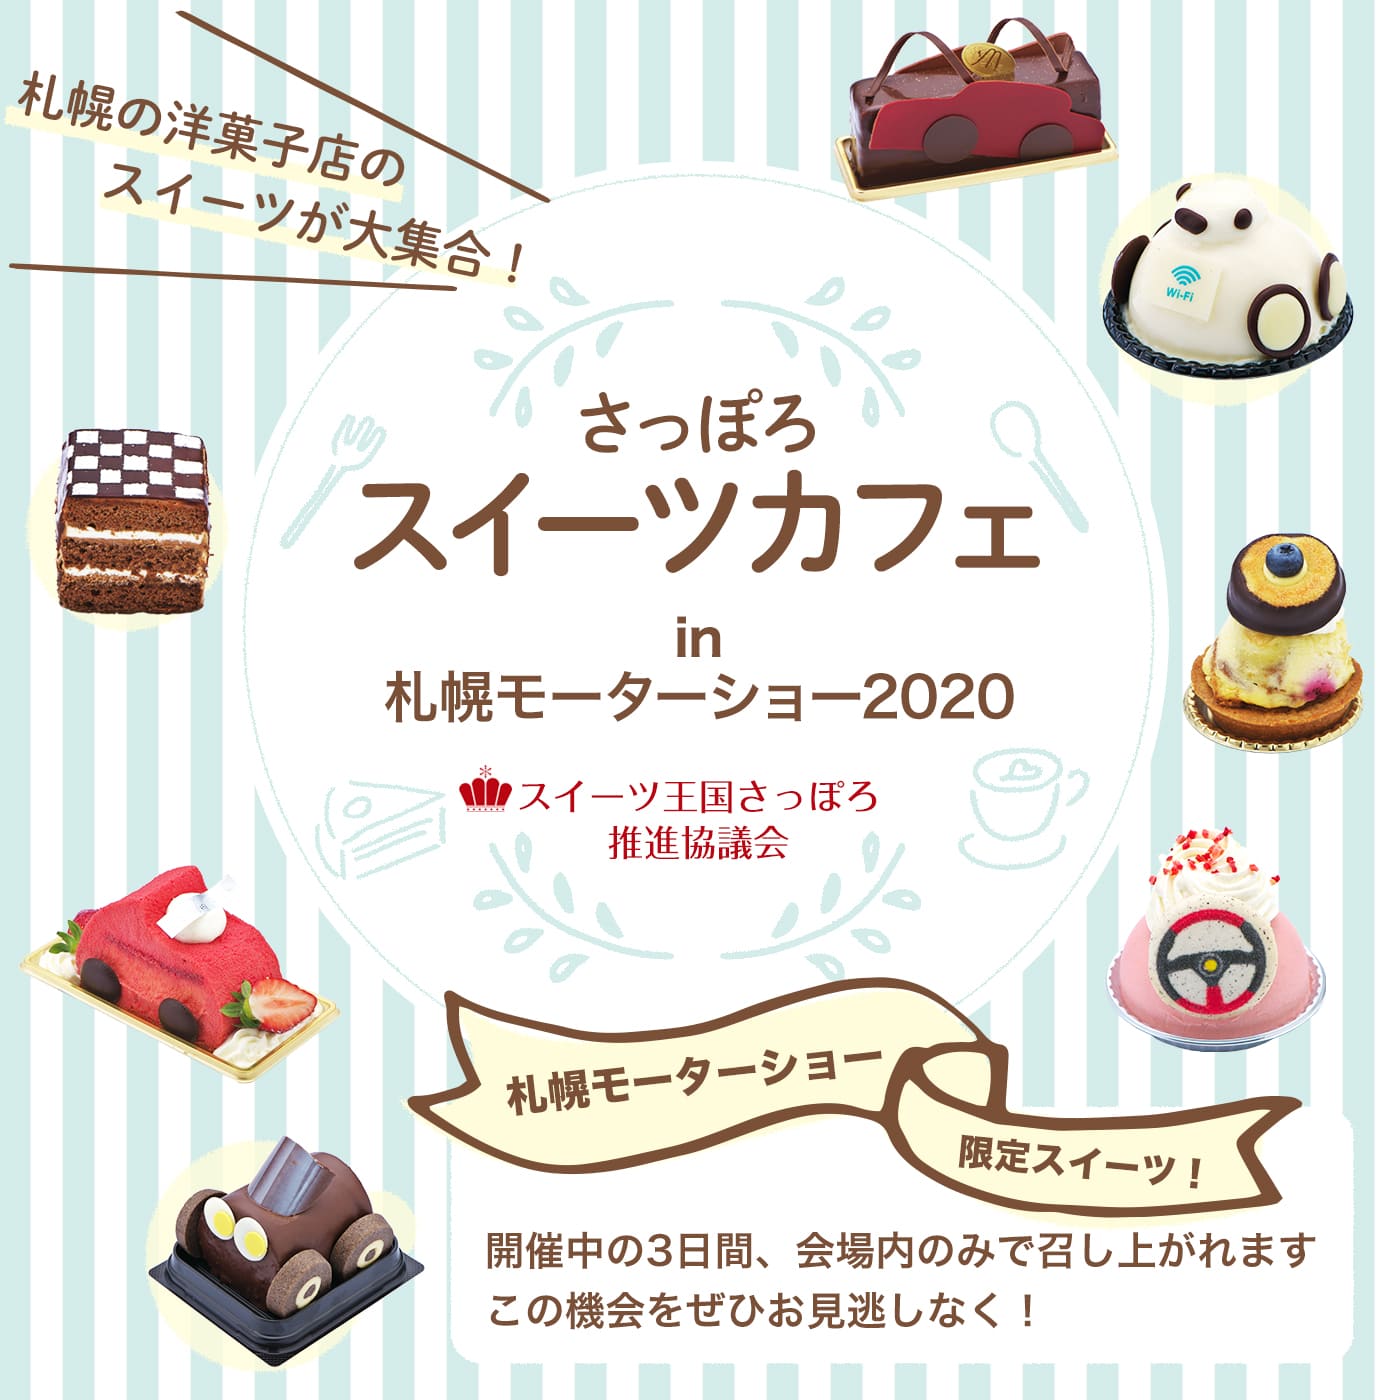 さっぽろスイーツカフェin札幌モーターショー2020　札幌の洋菓子店のスイーツが大集合！札幌モーターショー限定スイーツを開催中の3日間、会場内のみで召し上がれます。